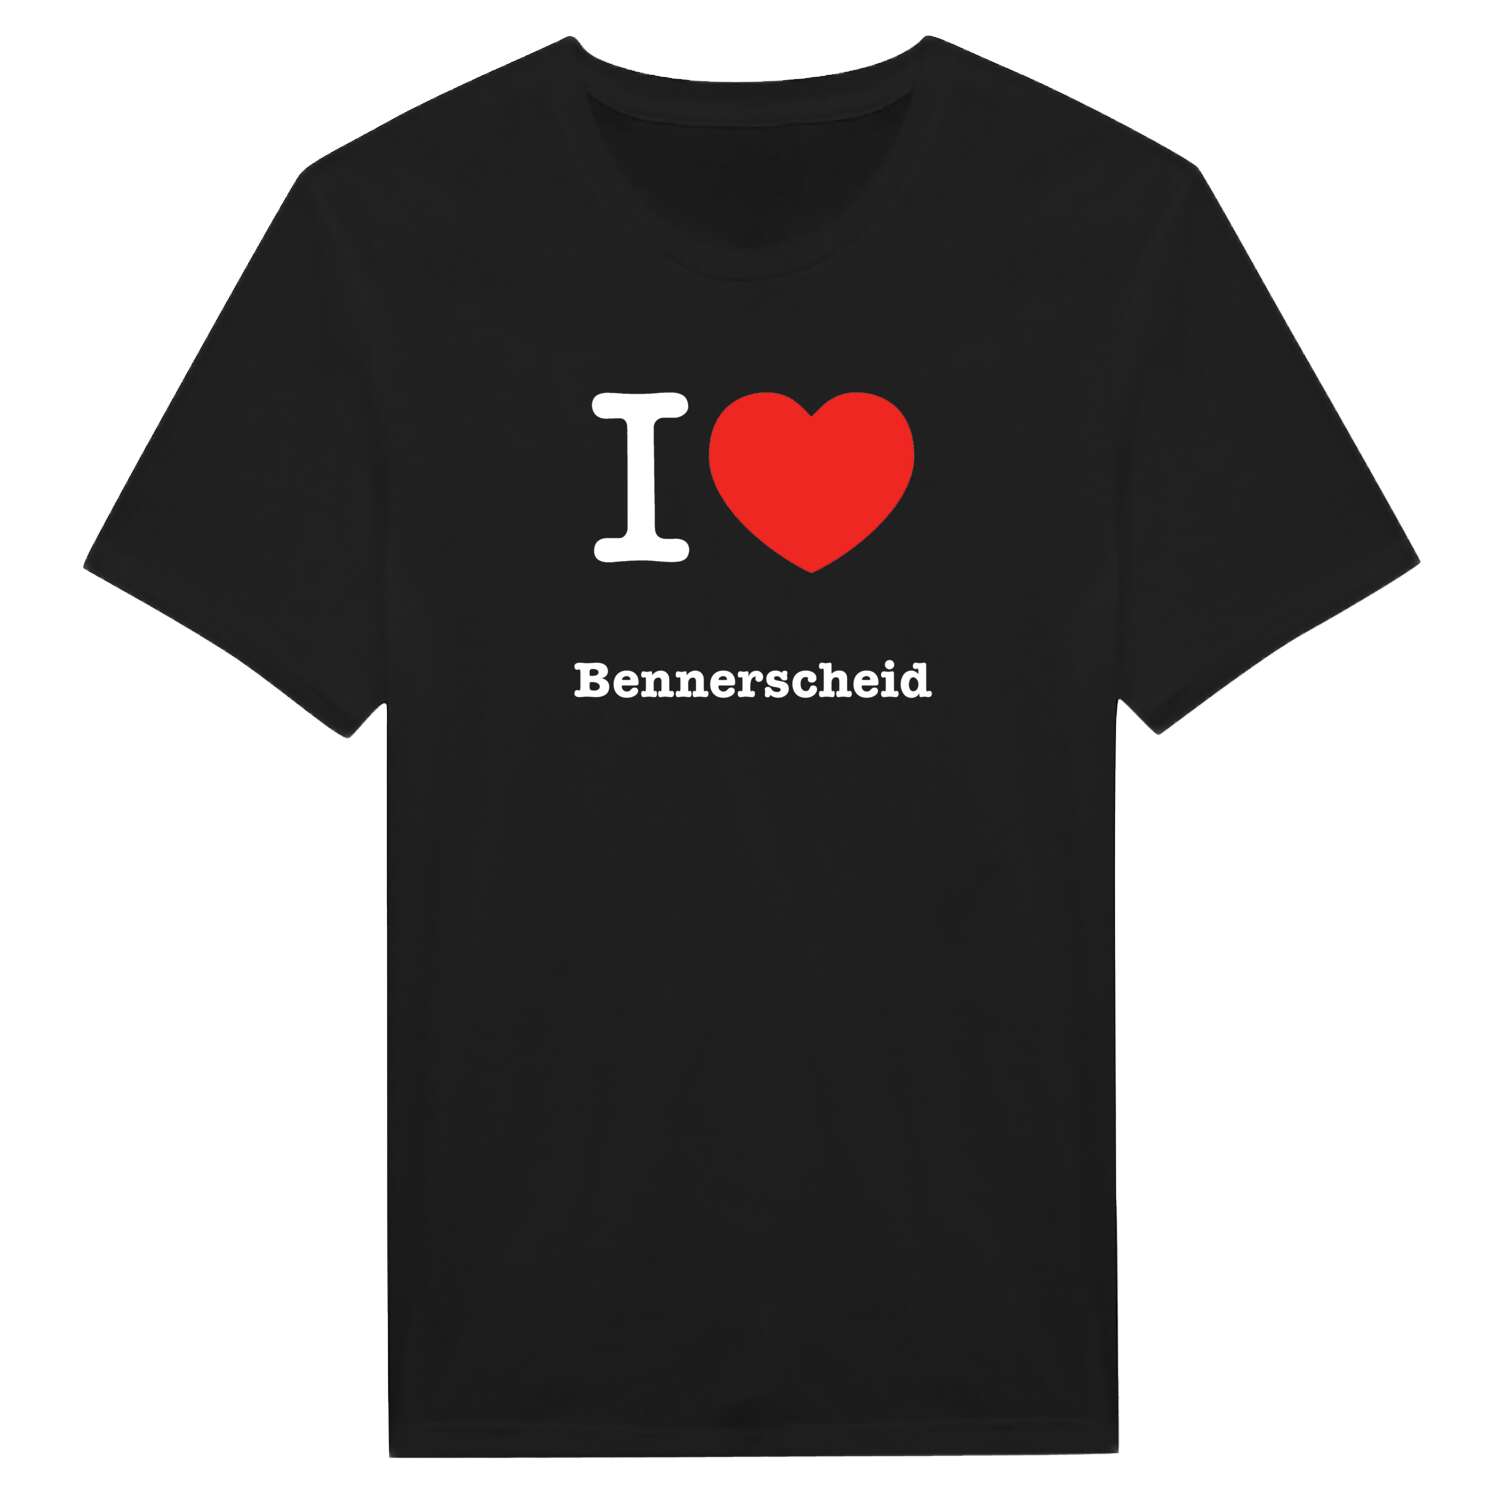 Bennerscheid T-Shirt »I love«